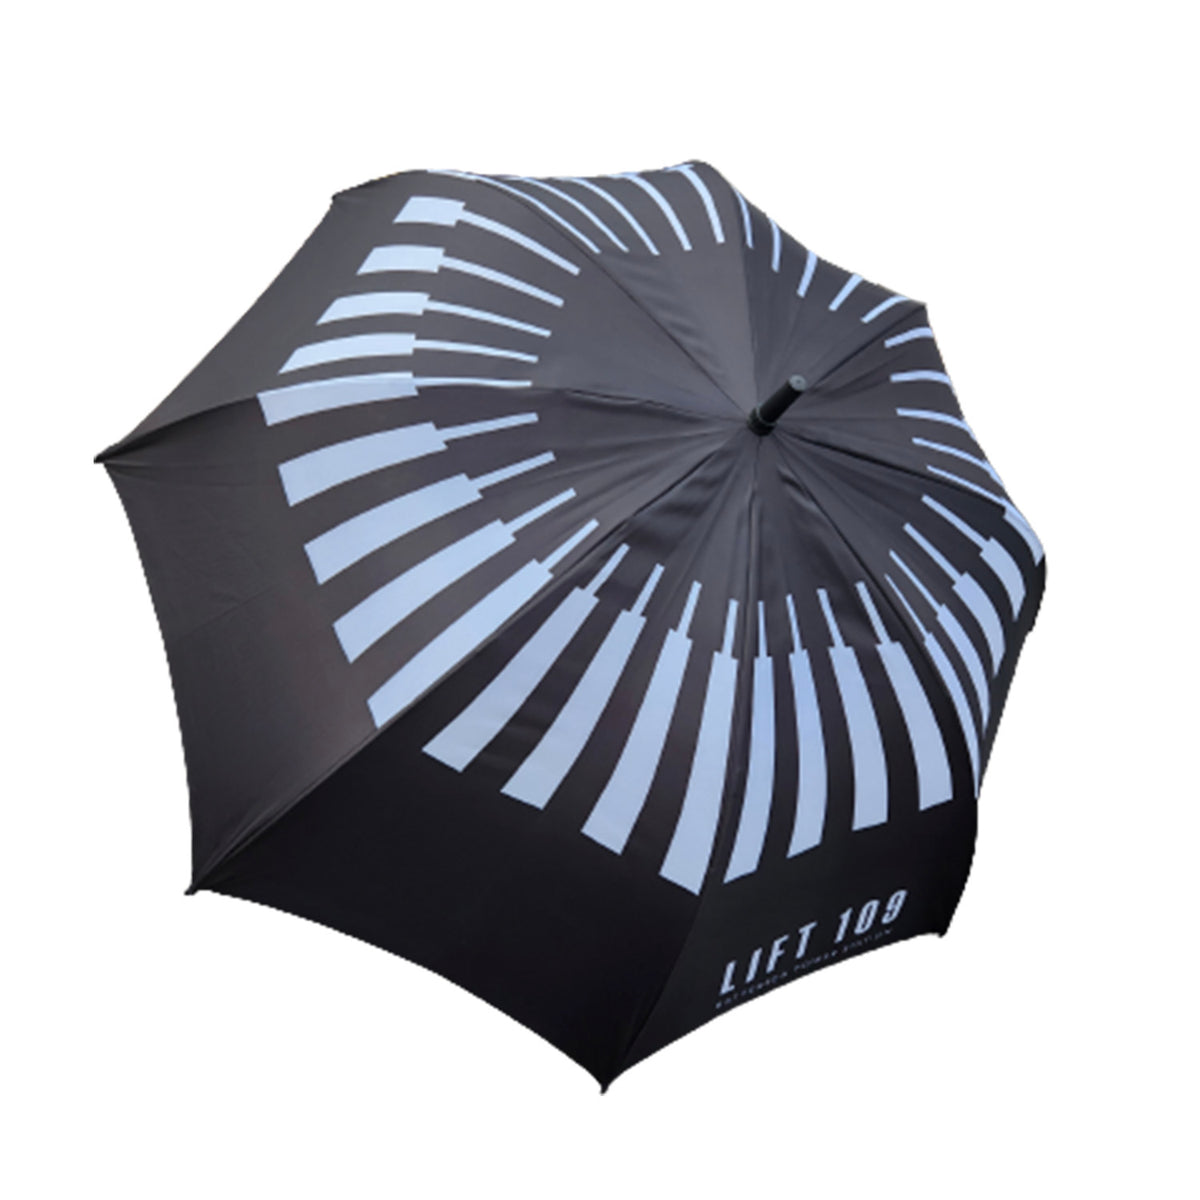 Lift 109 Golf Umbrella - Black